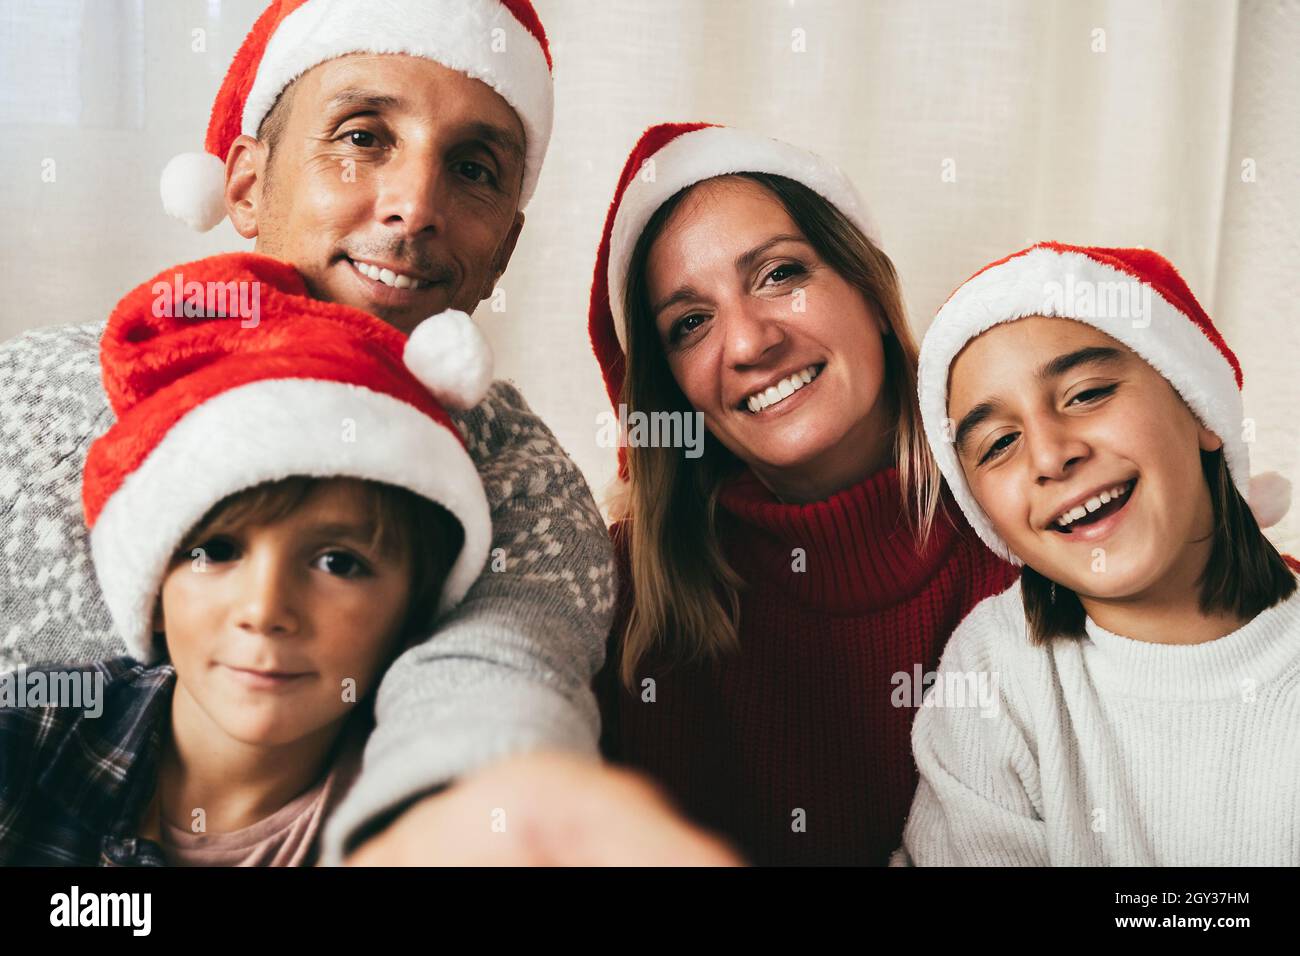 Famille faisant le selfie avec le téléphone portable pendant les vacances de Noël - Père, fille et enfant s'amusant portant des chapeaux de Noël - Focus sur la fille Banque D'Images